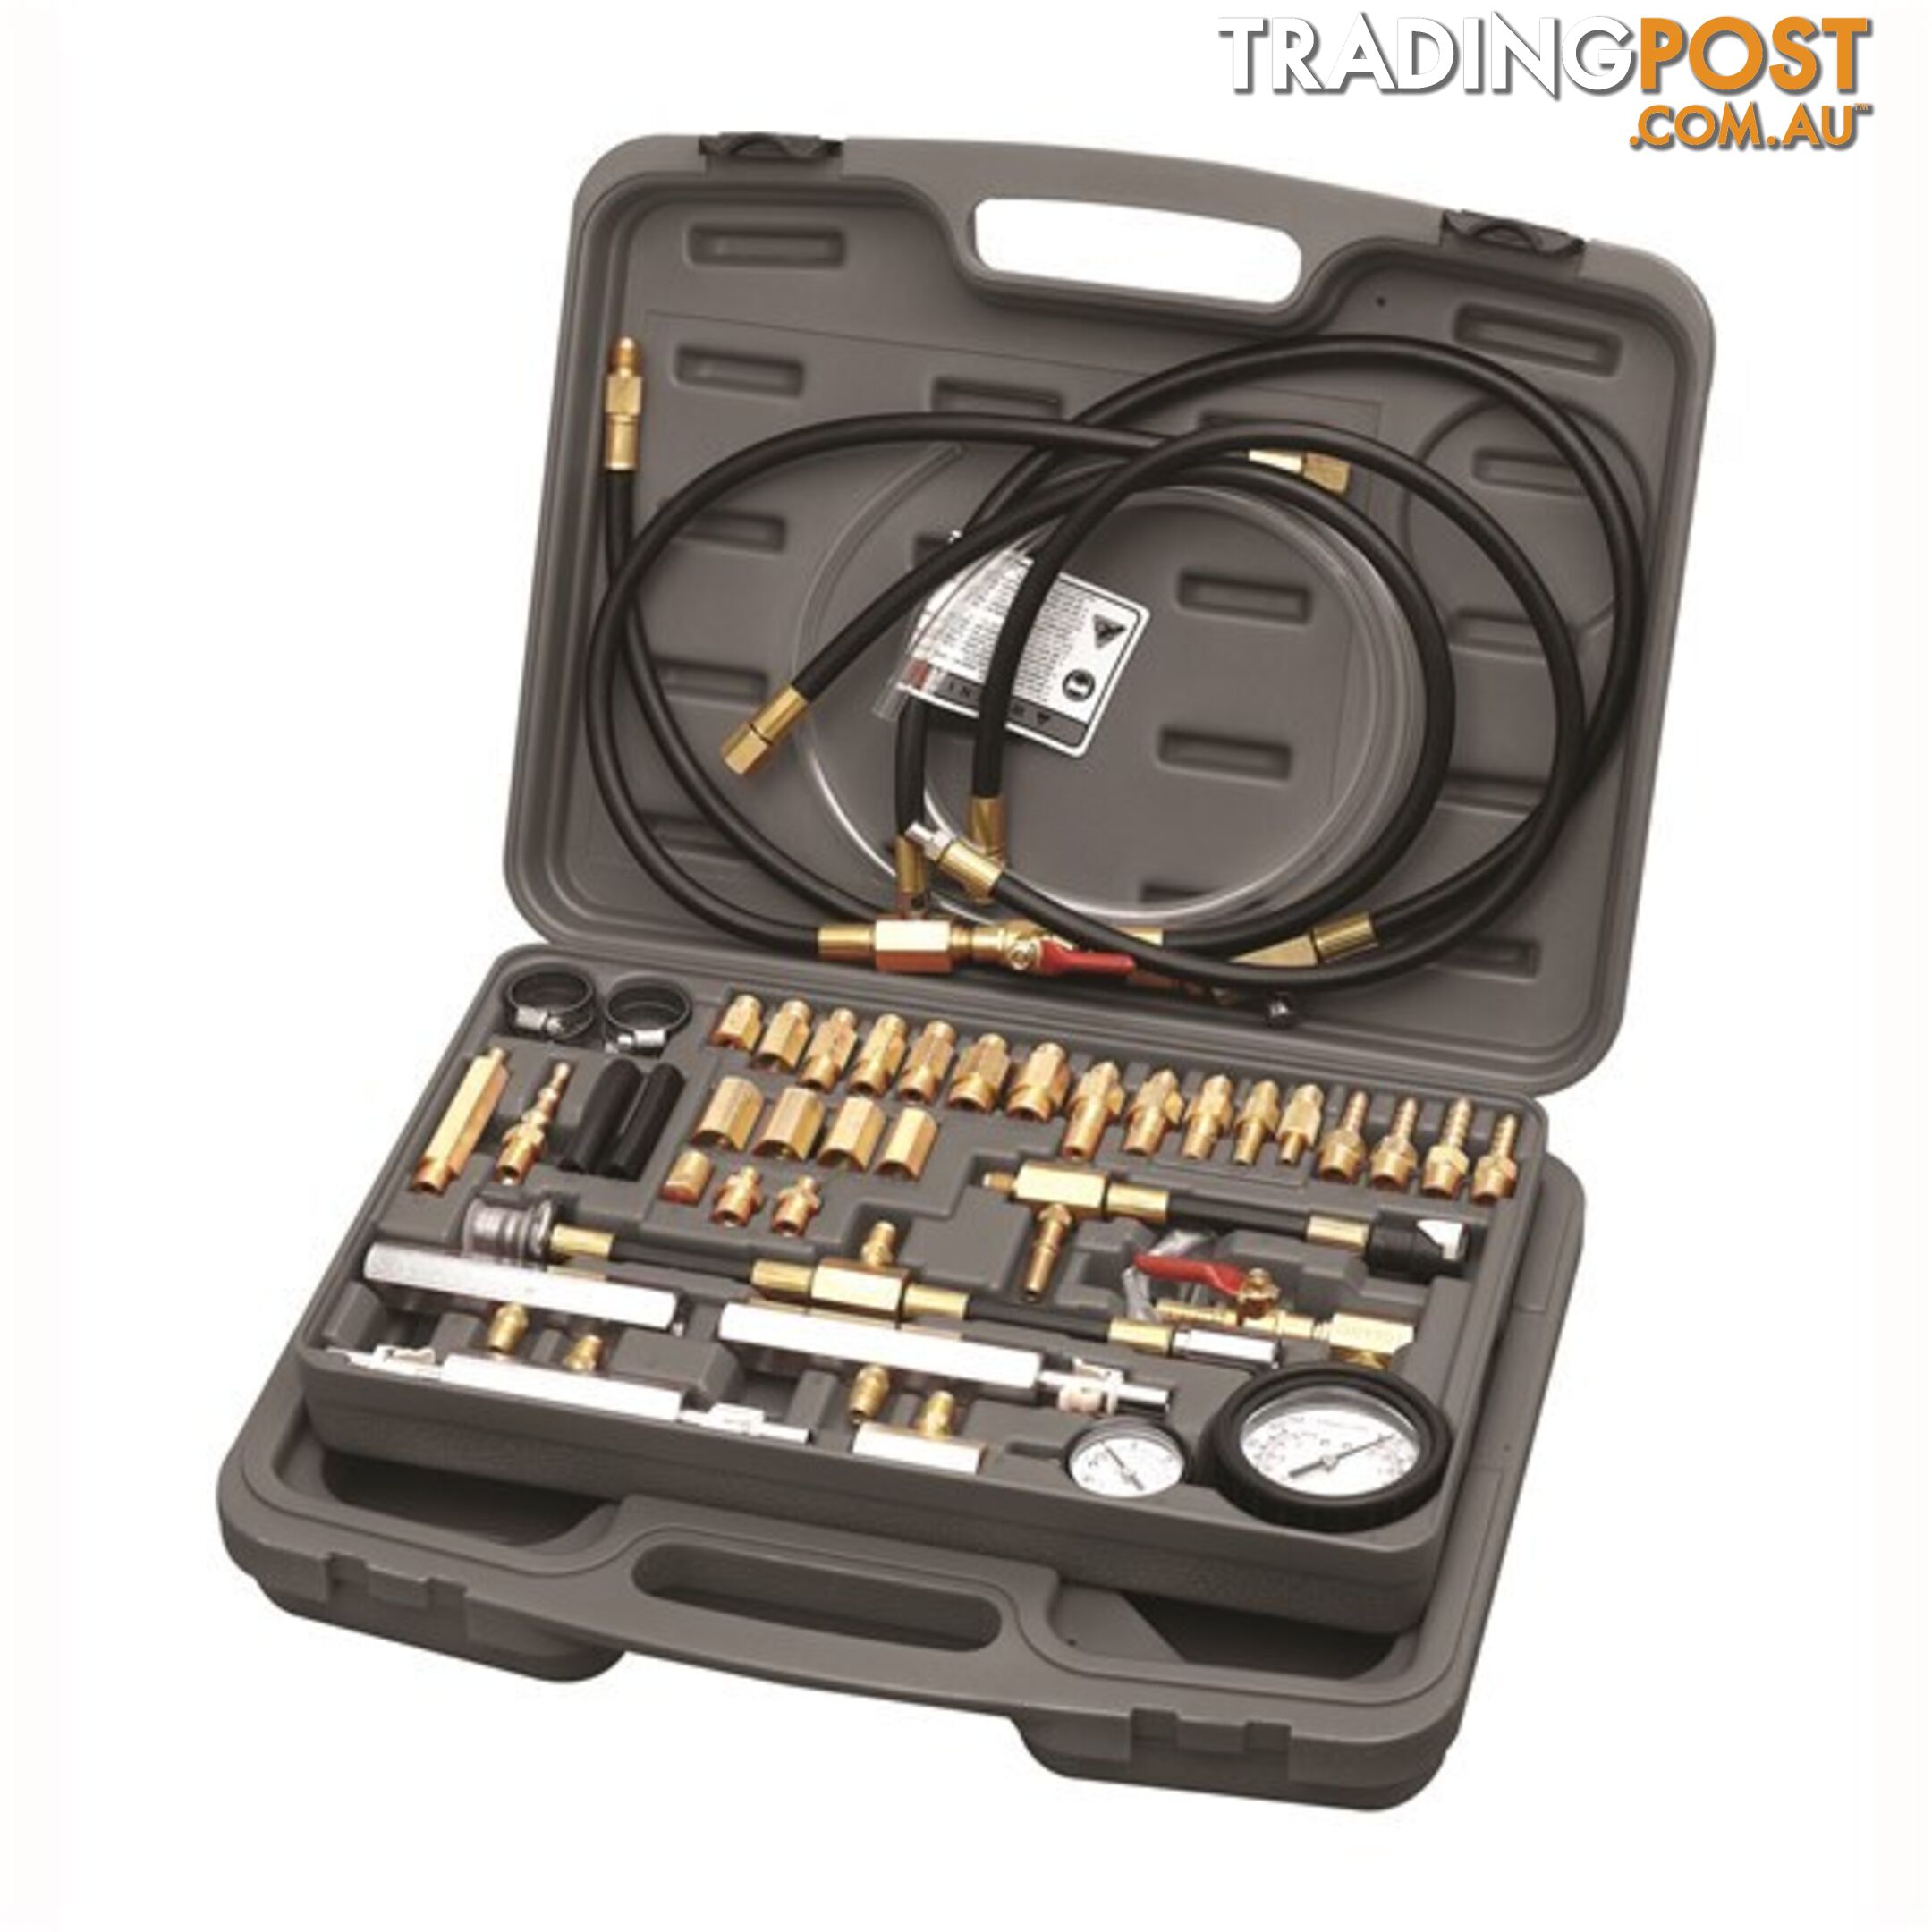 Toledo Fuel Pressure Tester Kit  - Master Fuel Injection SKU - 307300